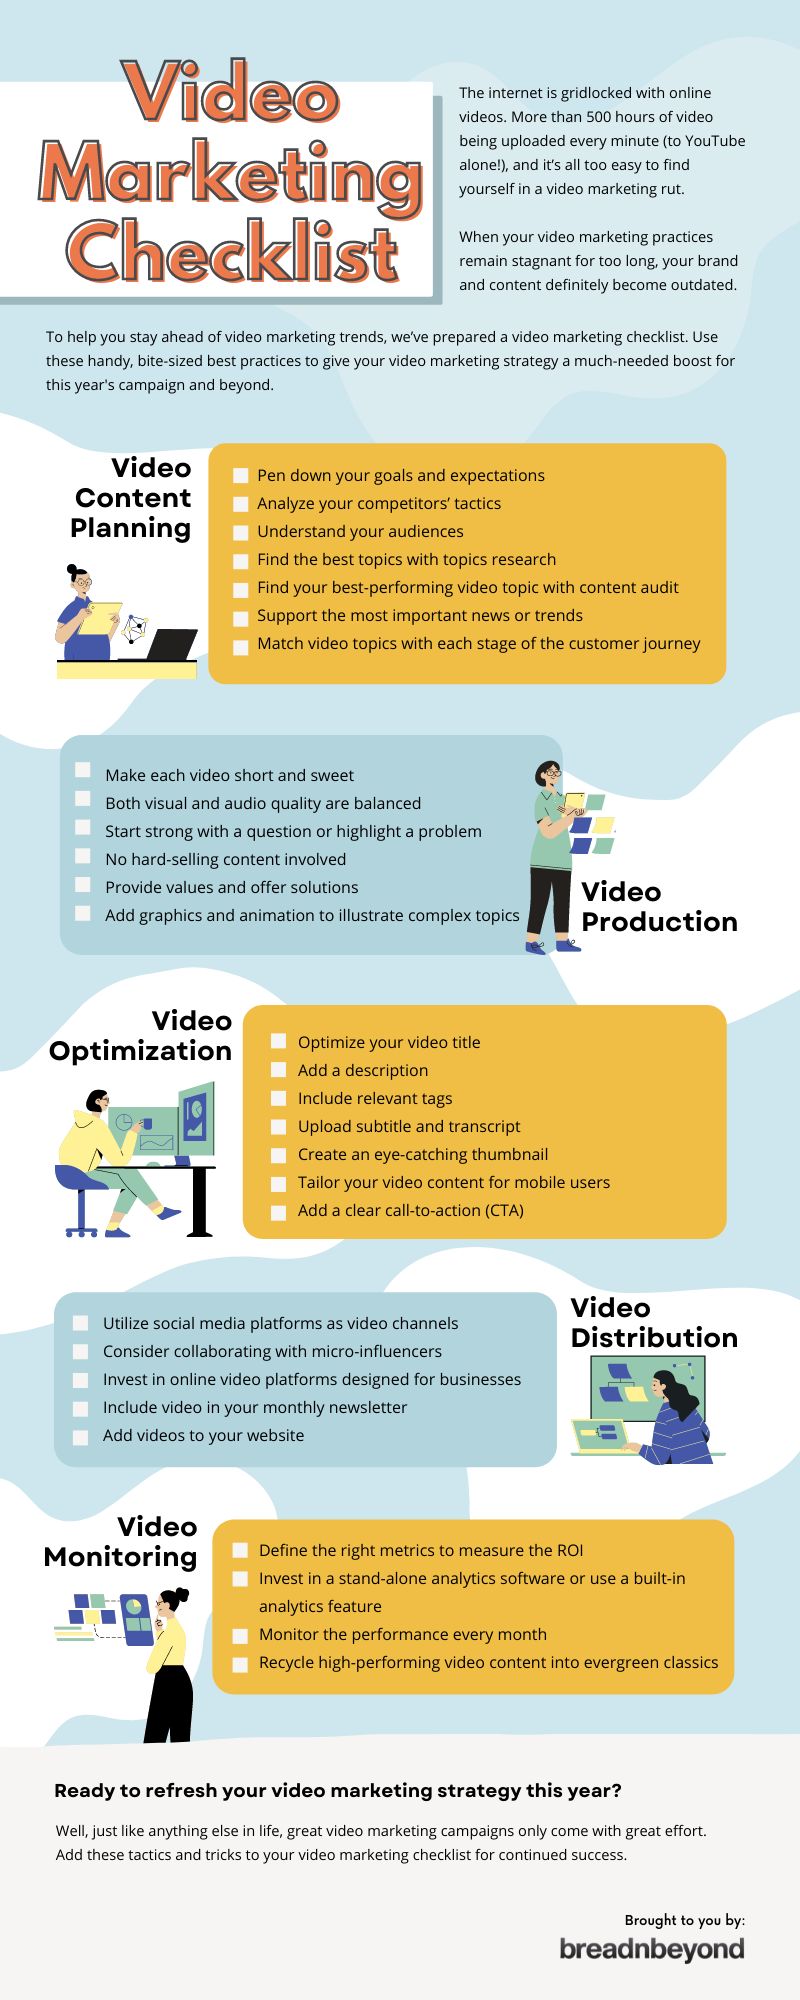 Video Marketing Chestlist infographic by Breadnbeyond